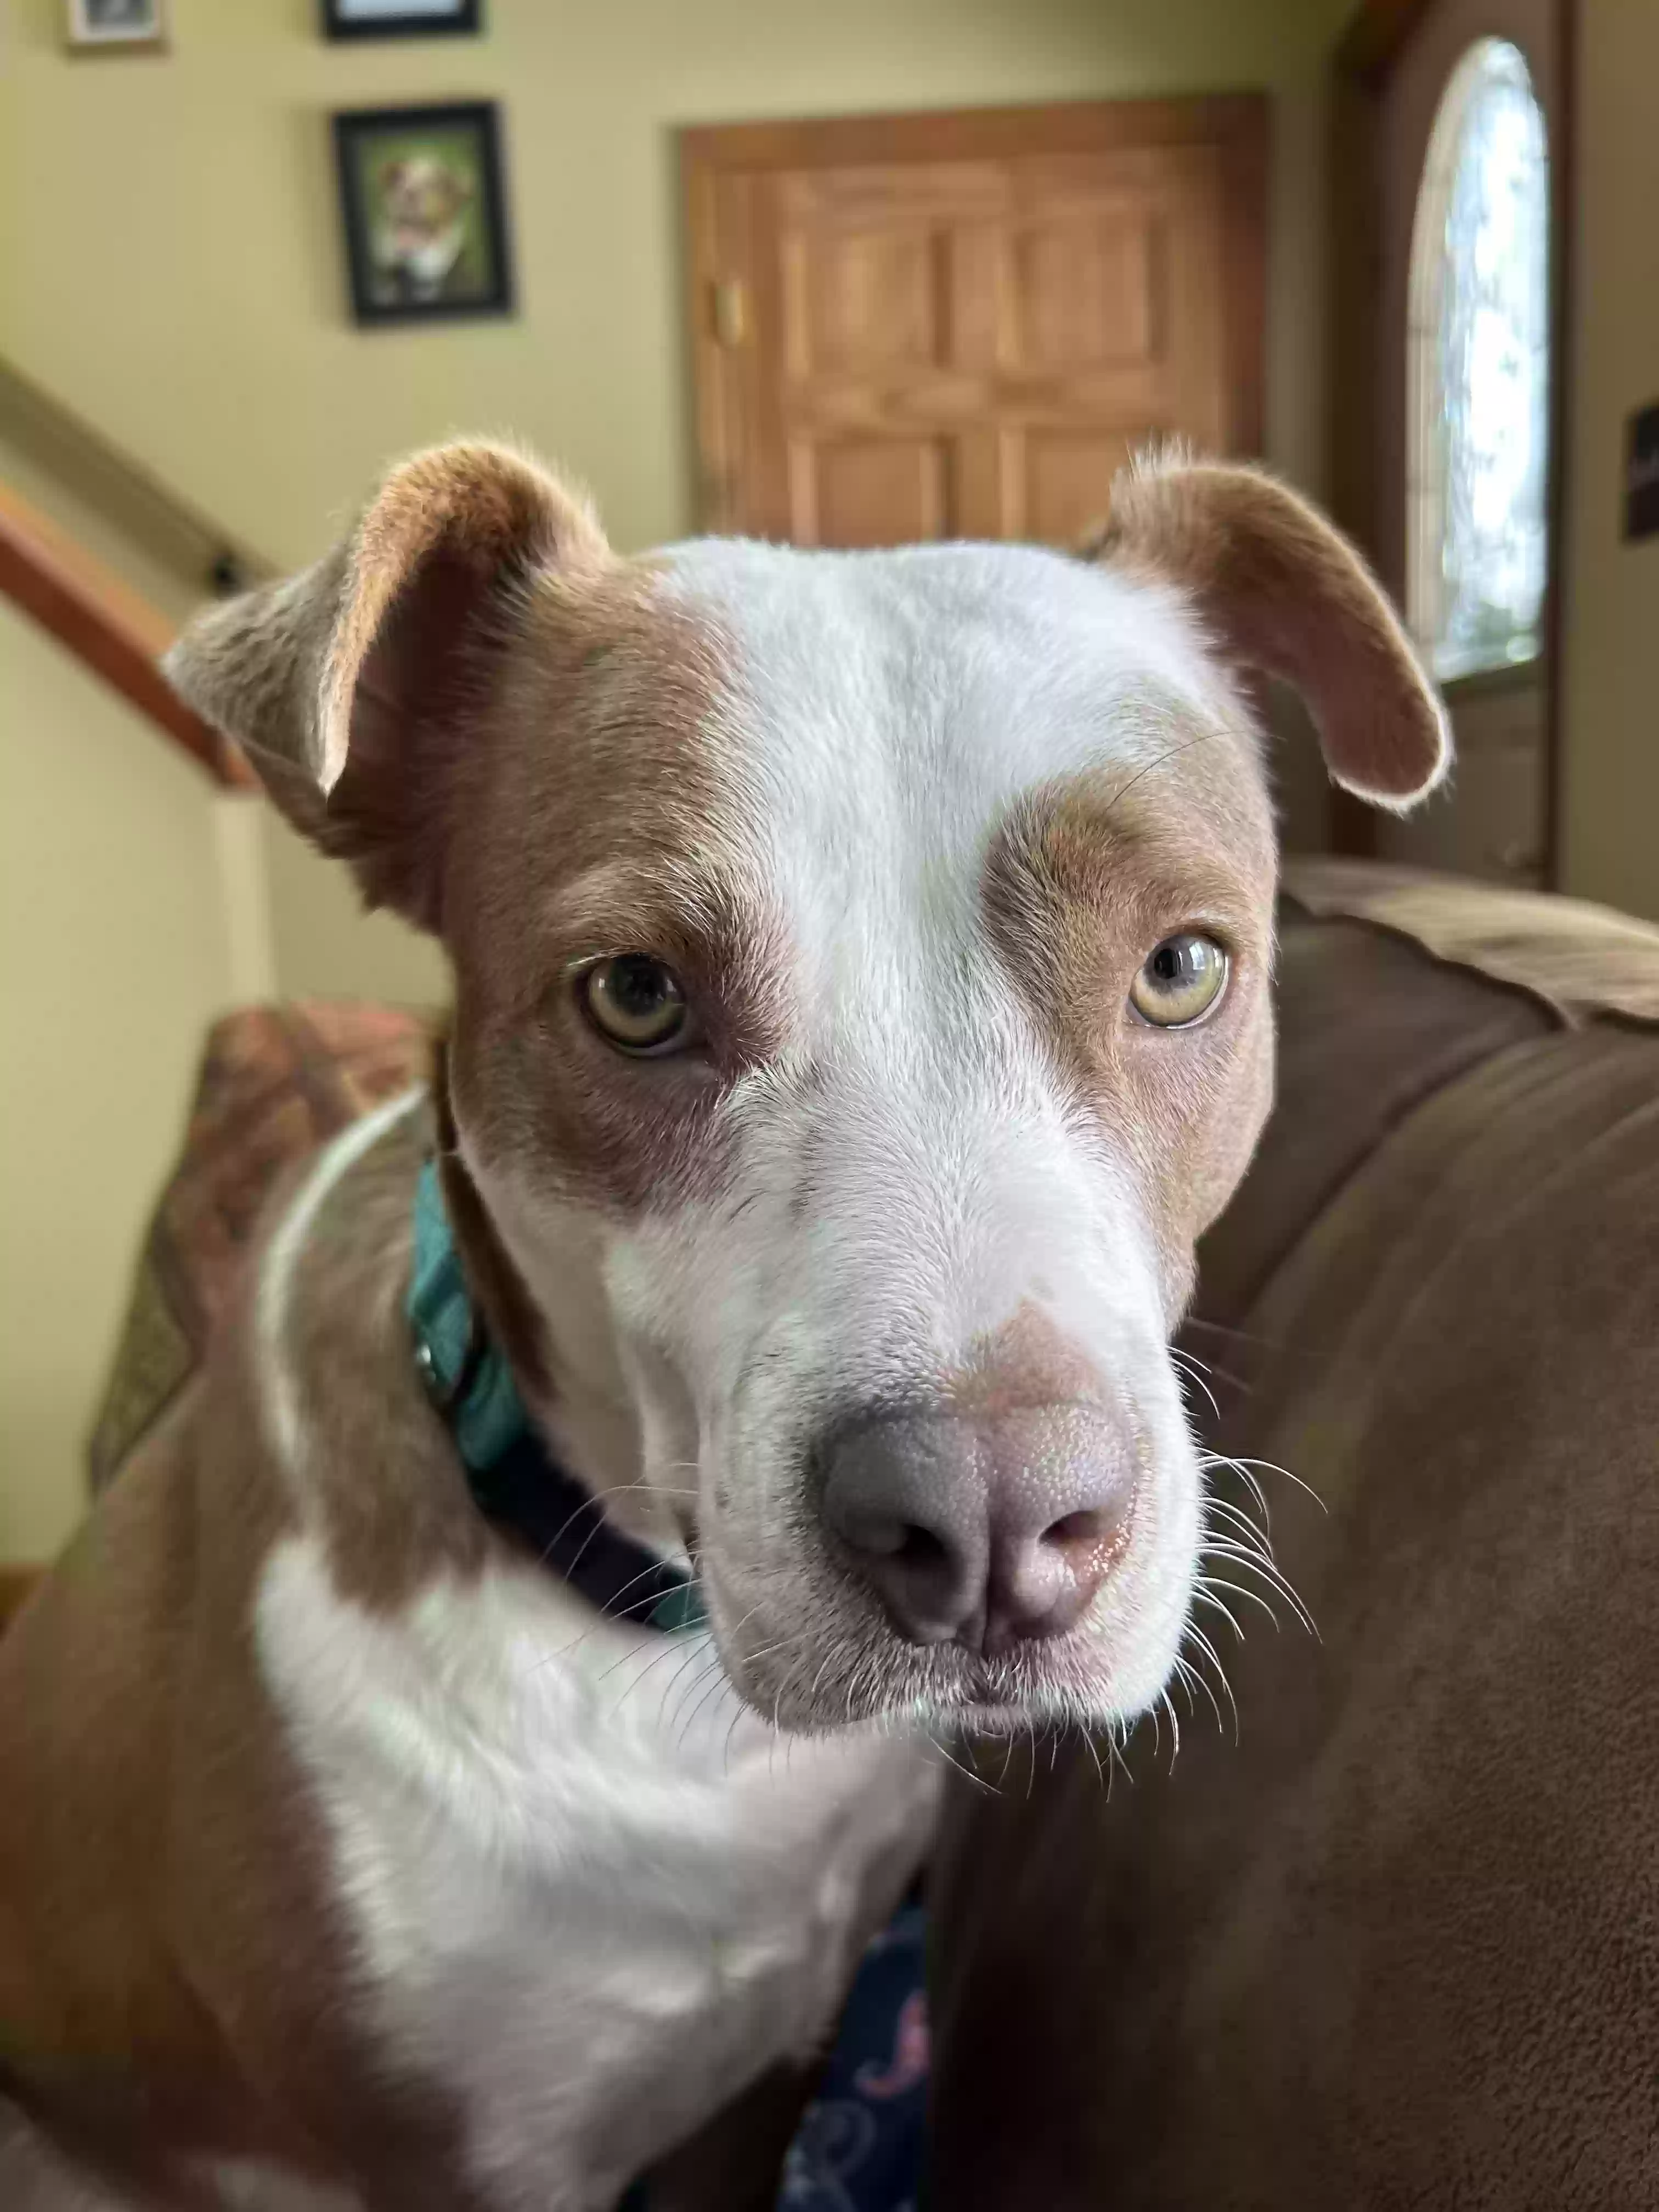 adoptable Dog in Canastota,NY named Phoebe